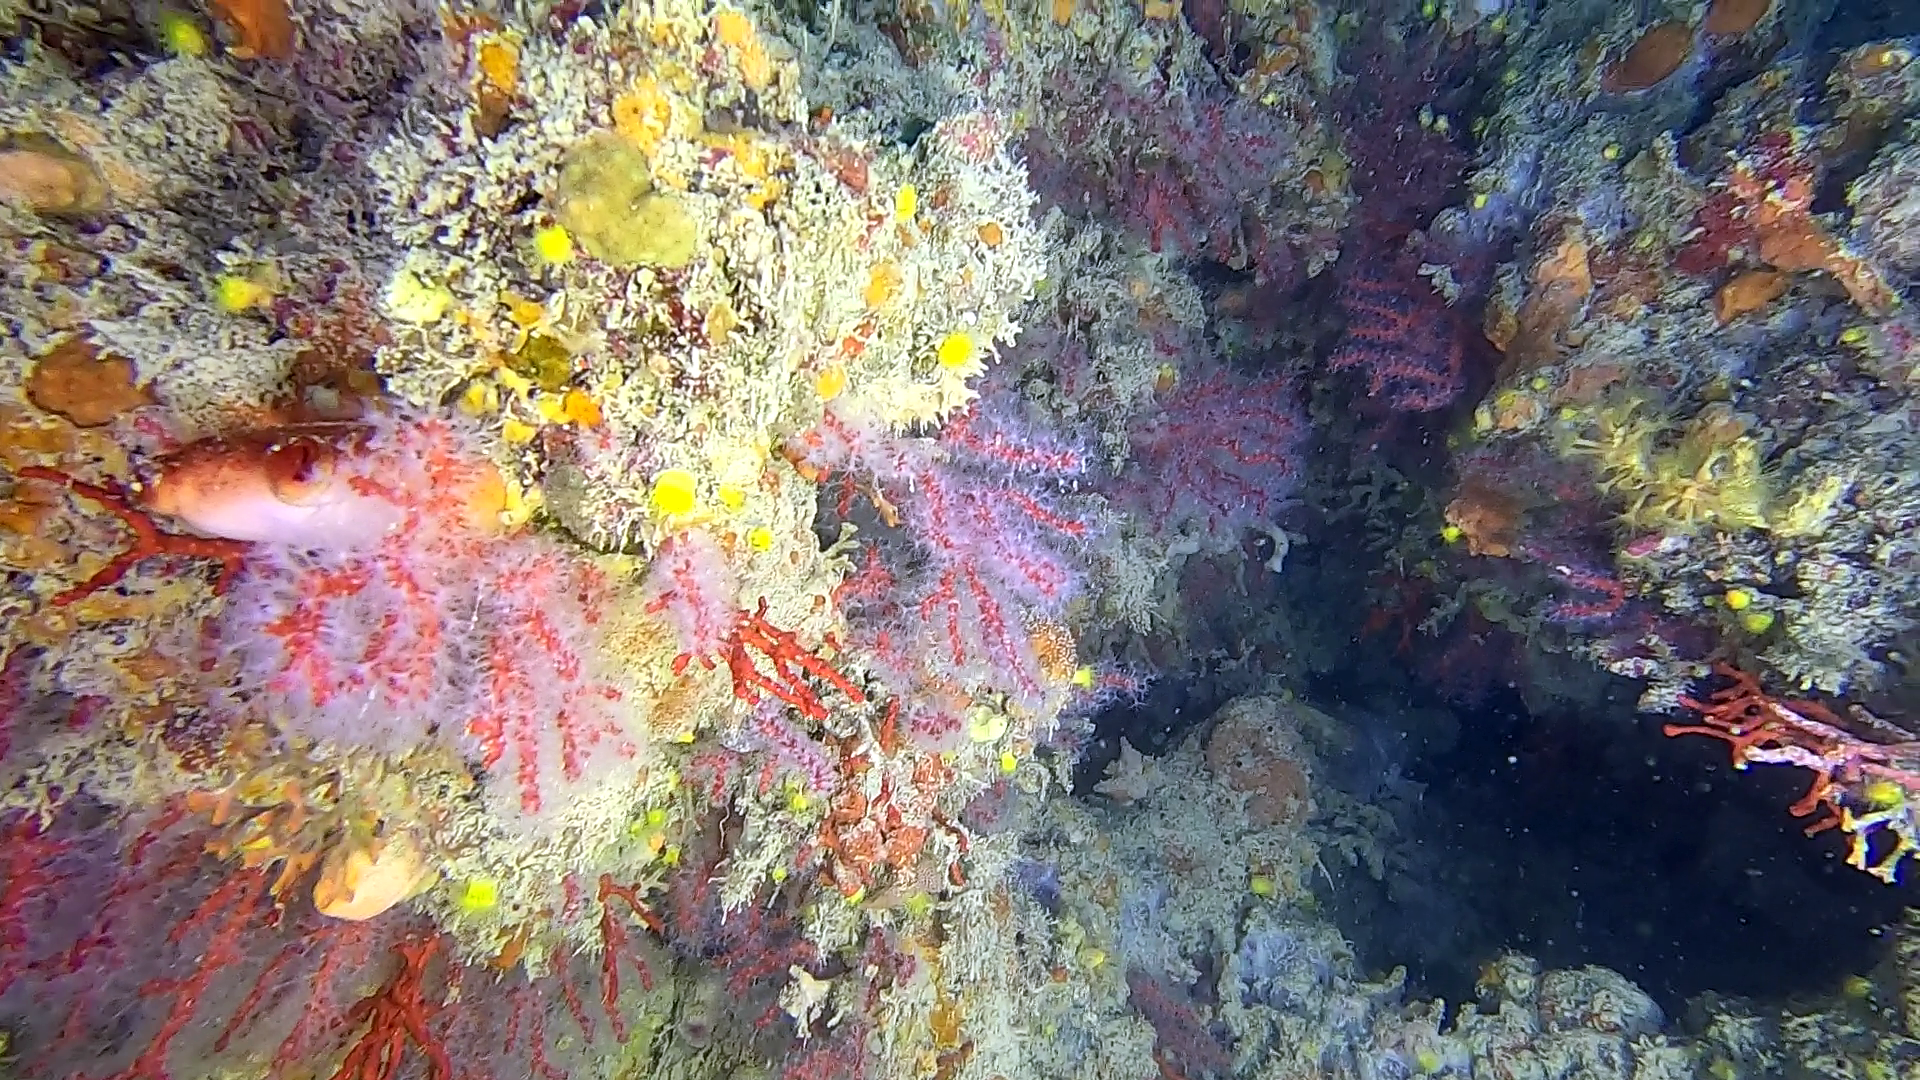 Scogliera coralligena di Calafuria con corallo rosso - Corallium rubrum - Coral reef of Calafuria with Precious coral - www.intotheblue.it